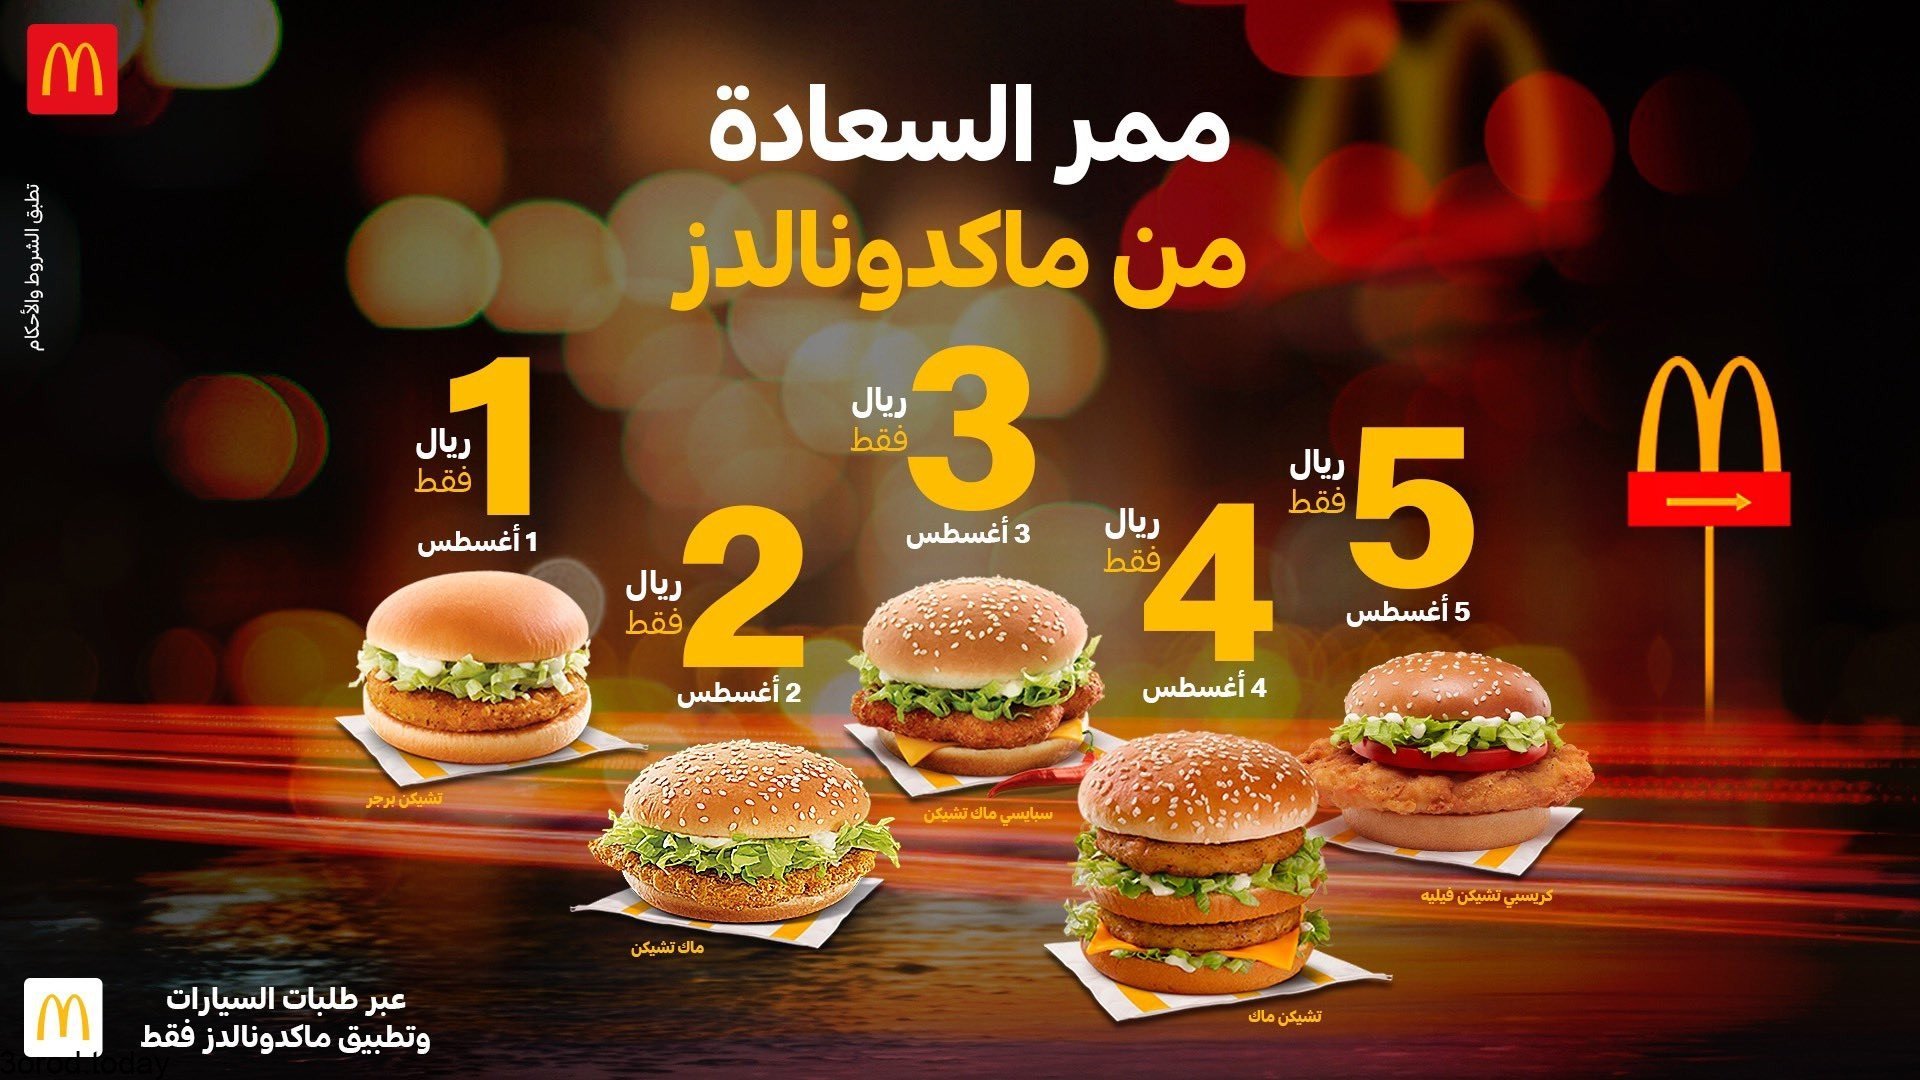 - عروض المطاعم : عروض مطعم ماكدونالدز السعودية علي ممر السعادة من 1-5 اغسطس باقل الاسعار